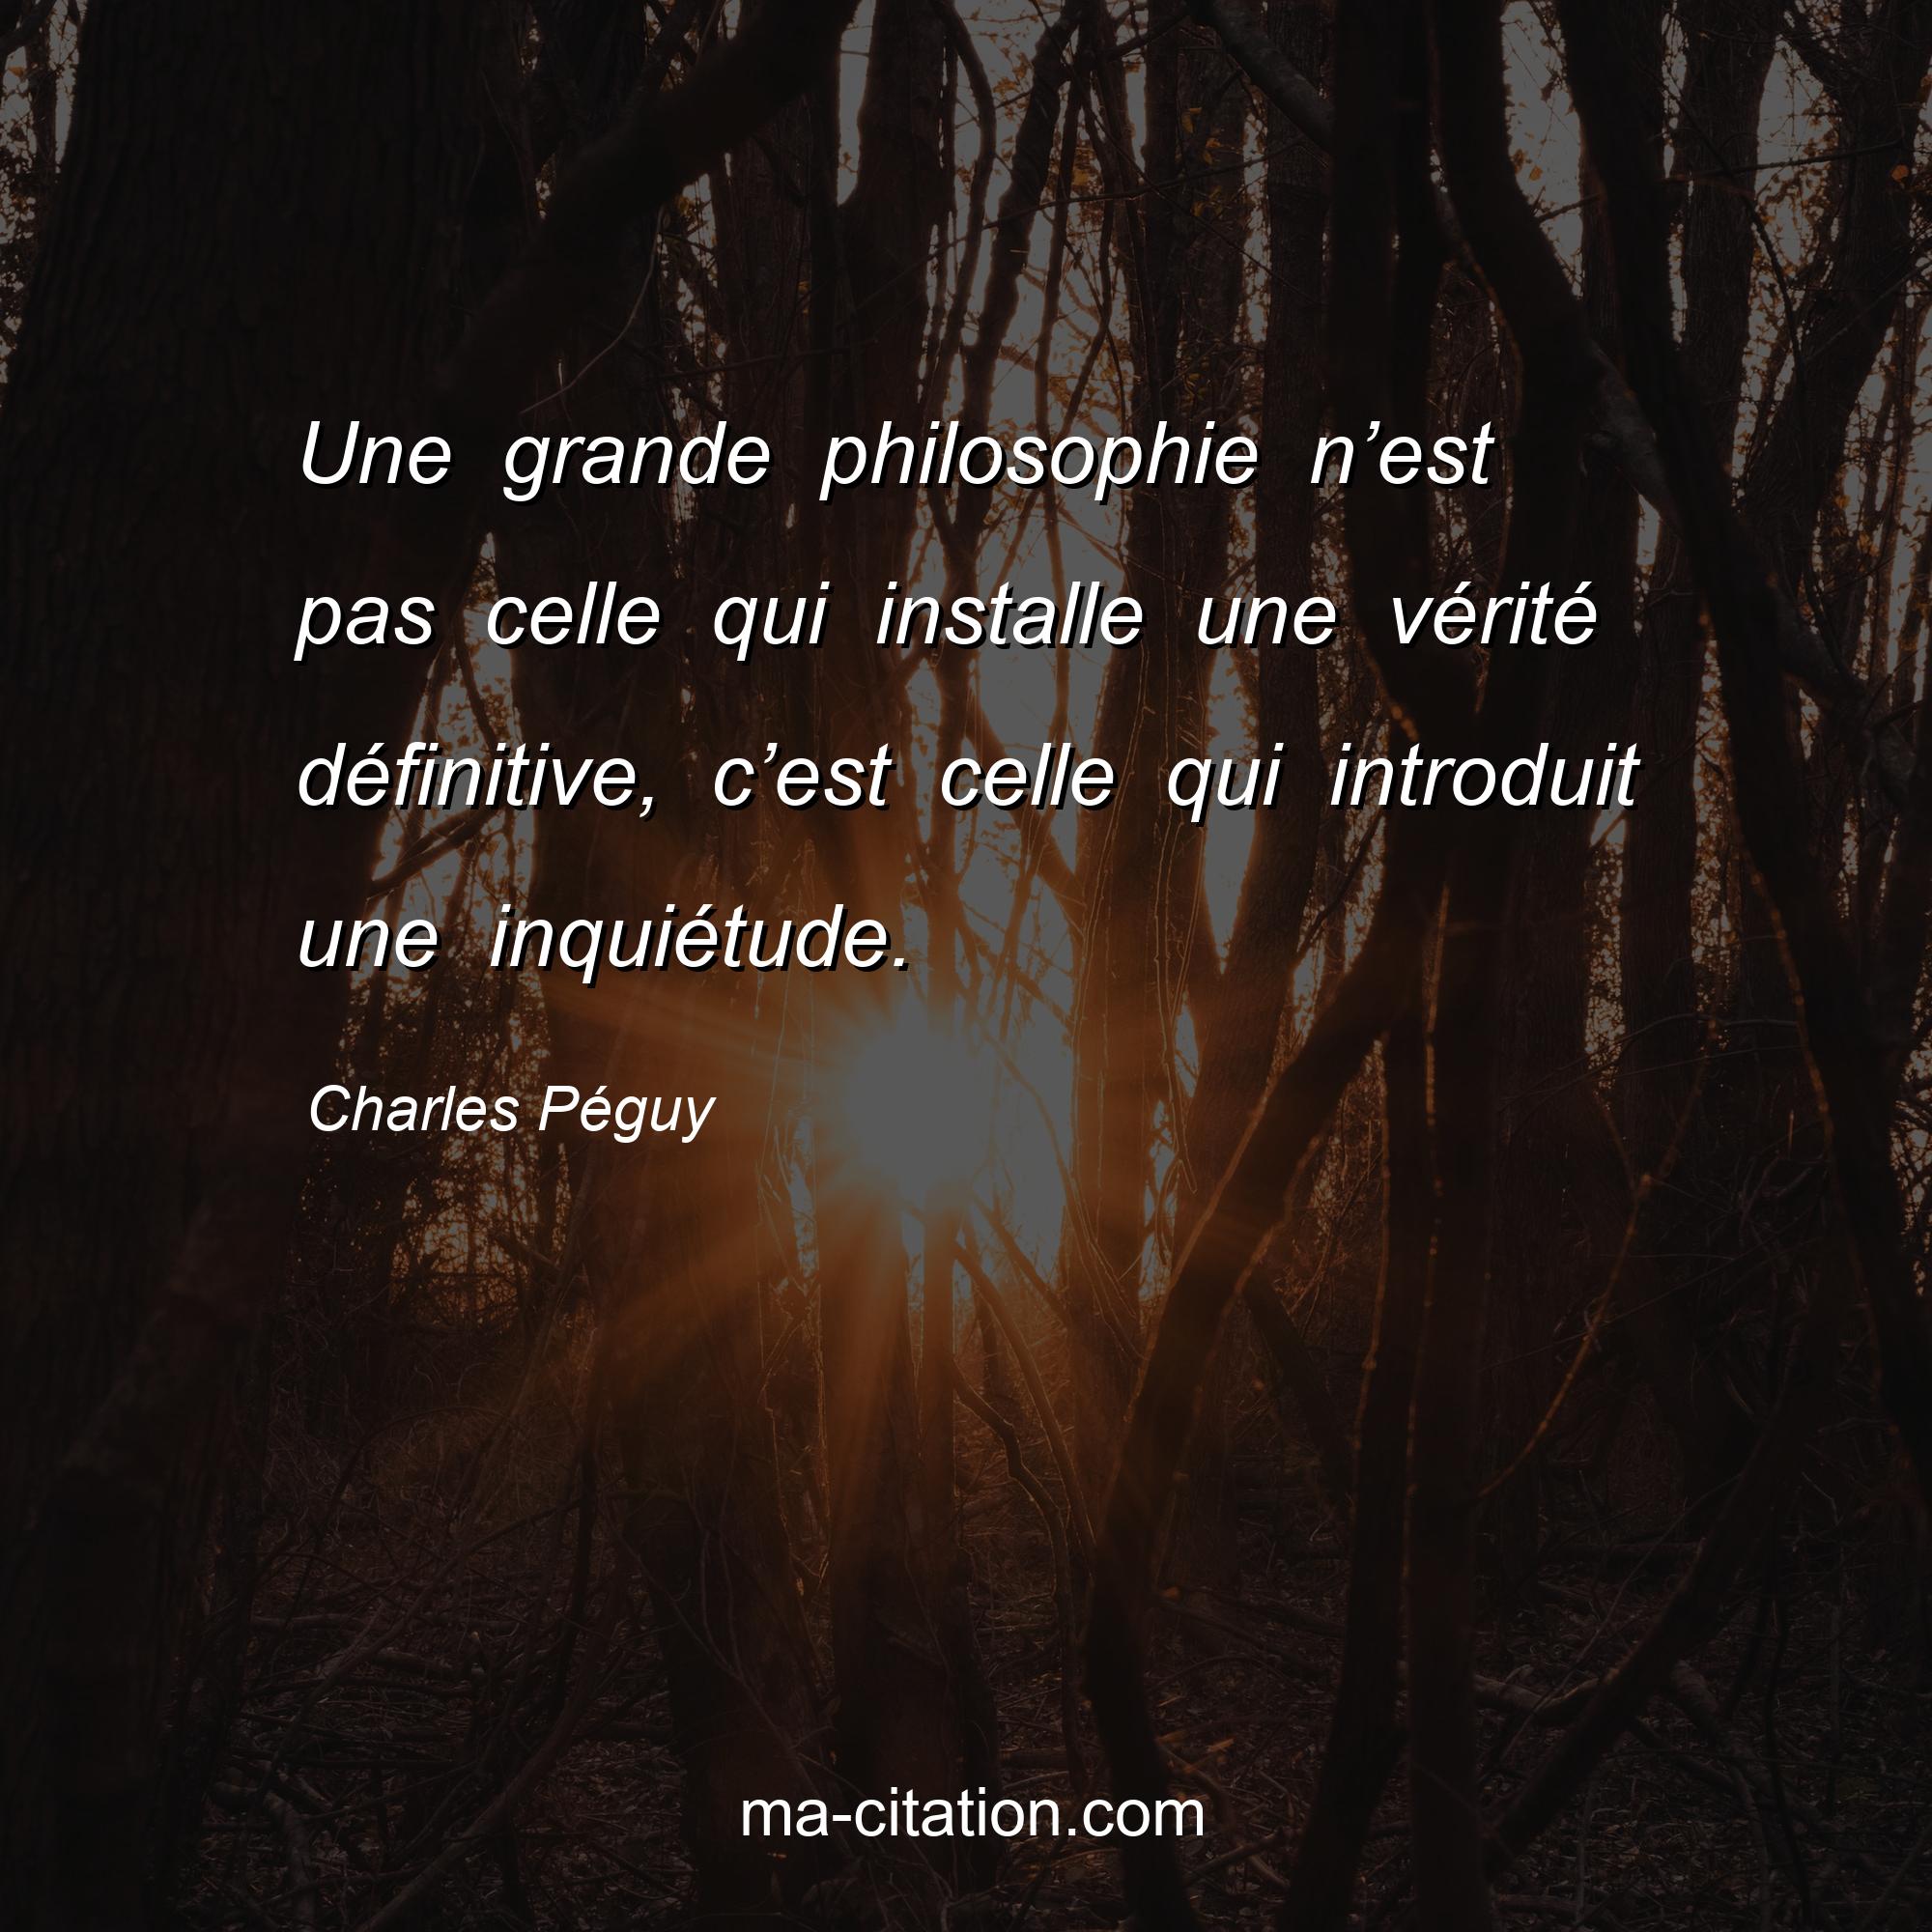 Charles Péguy : Une grande philosophie n’est pas celle qui installe une vérité définitive, c’est celle qui introduit une inquiétude.